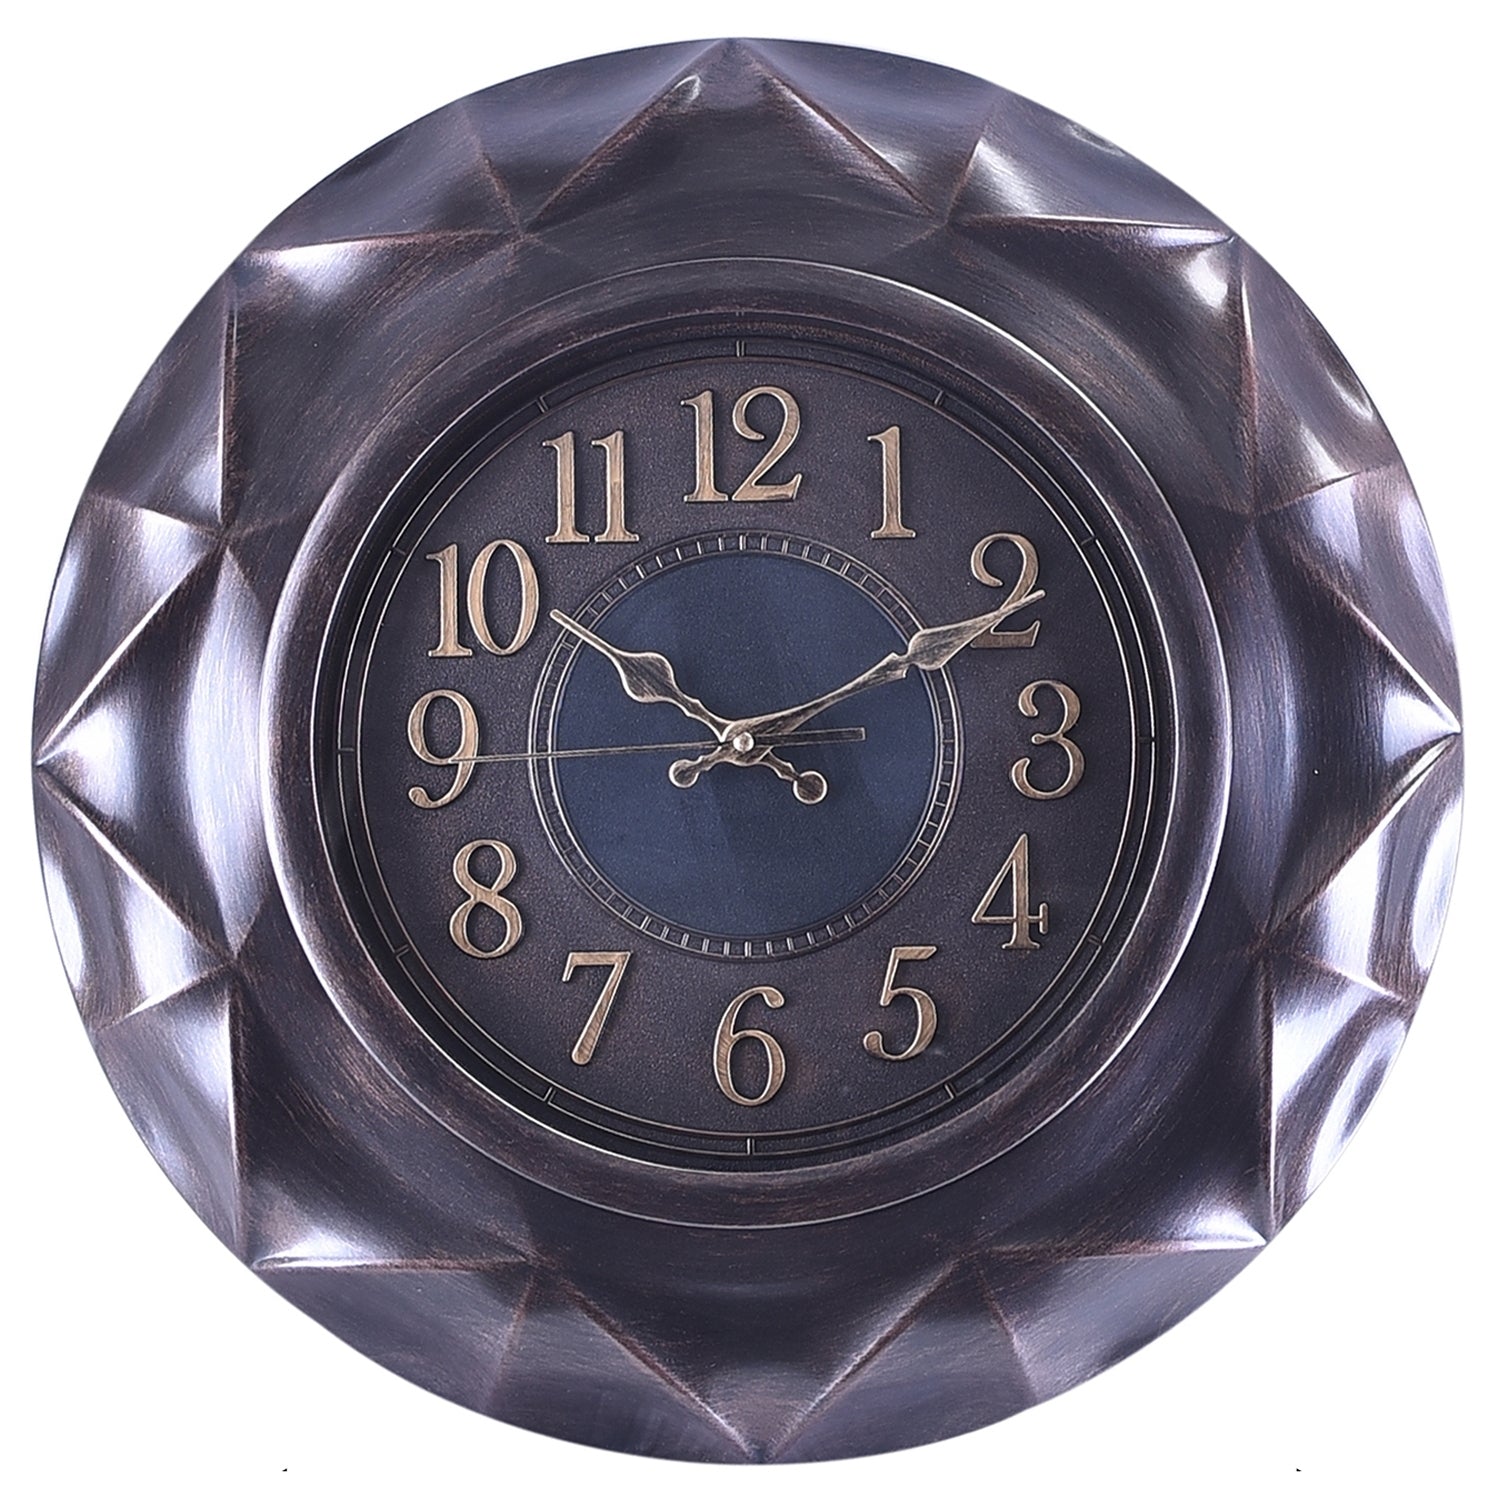 Premium Antique Design Analog Wall Clock 20